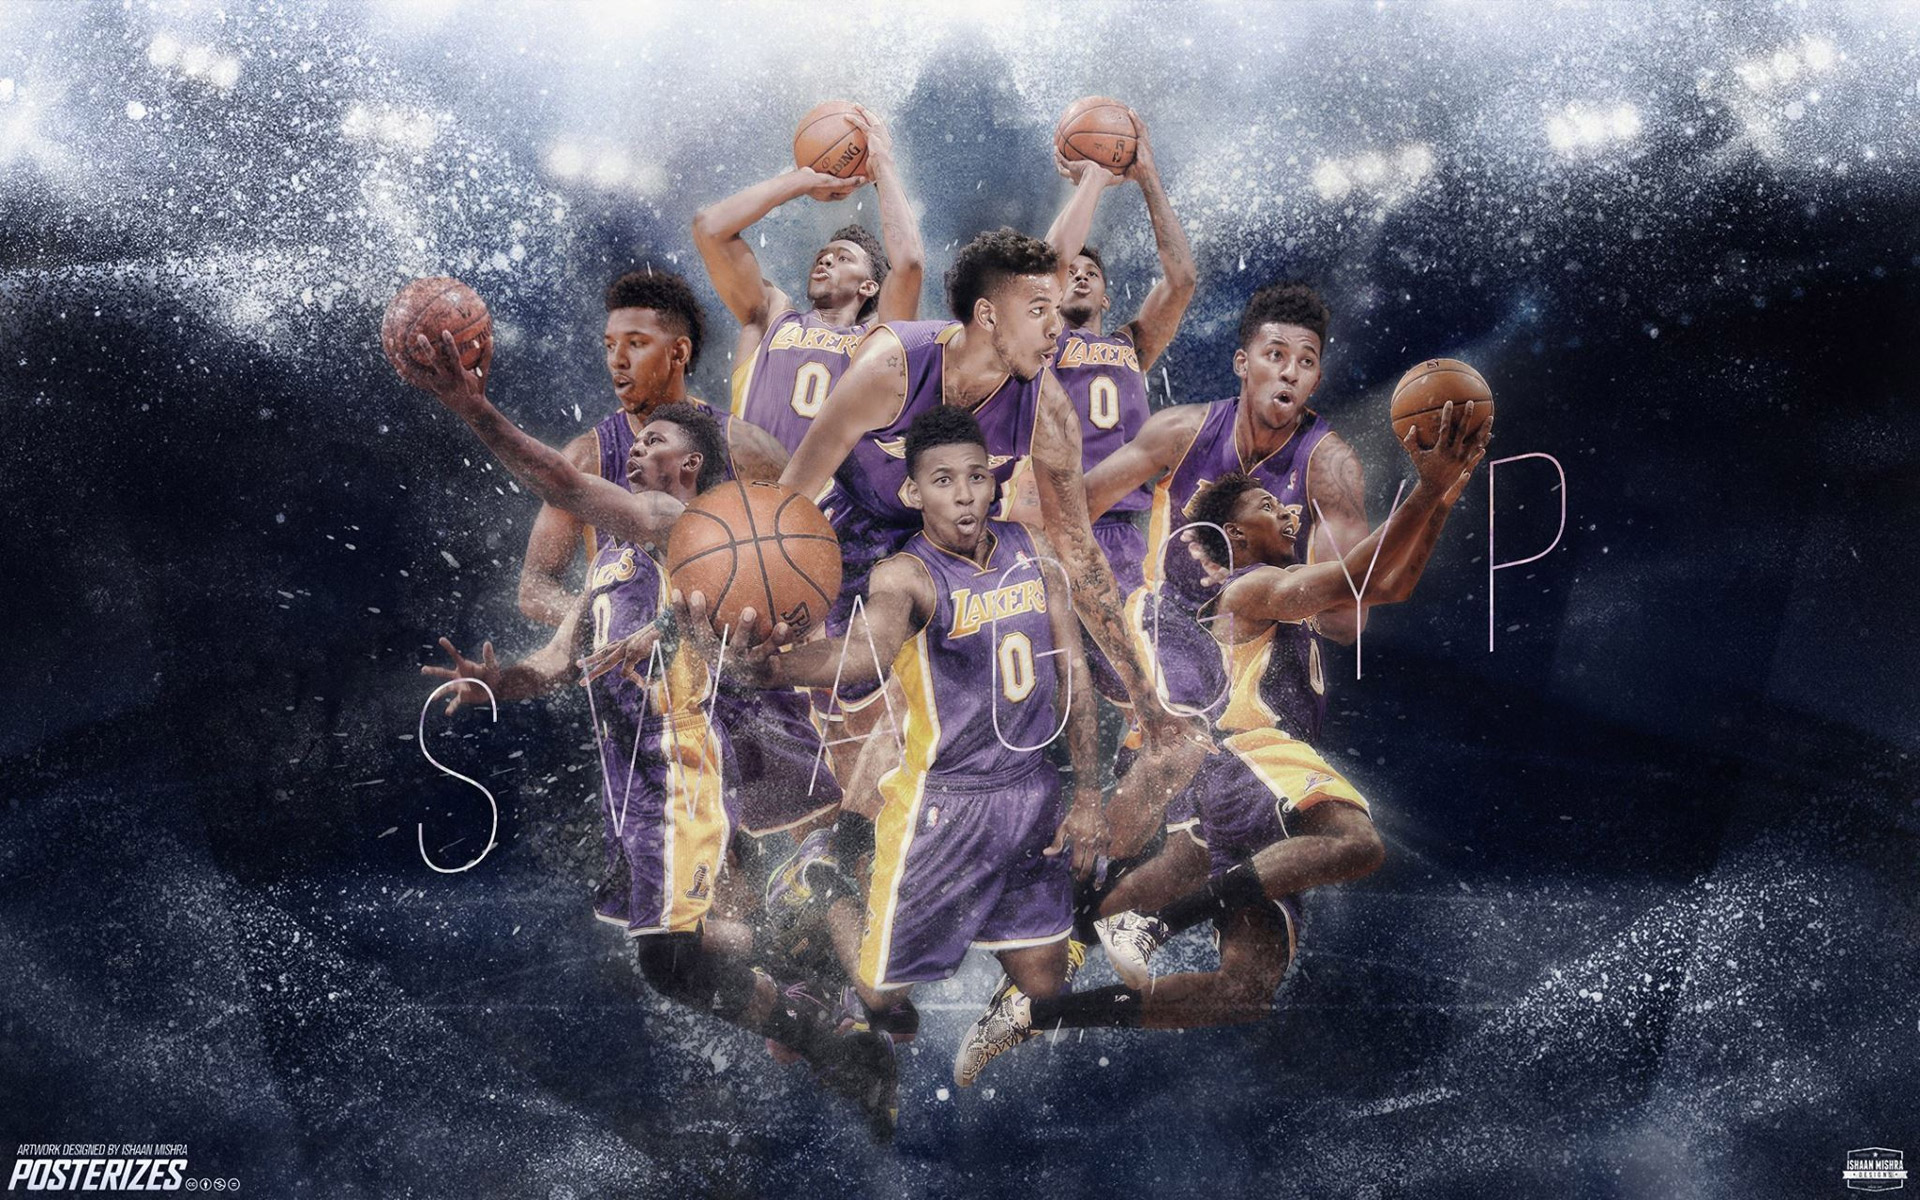 Nick Young La Lakers Wallpaper Basketball At